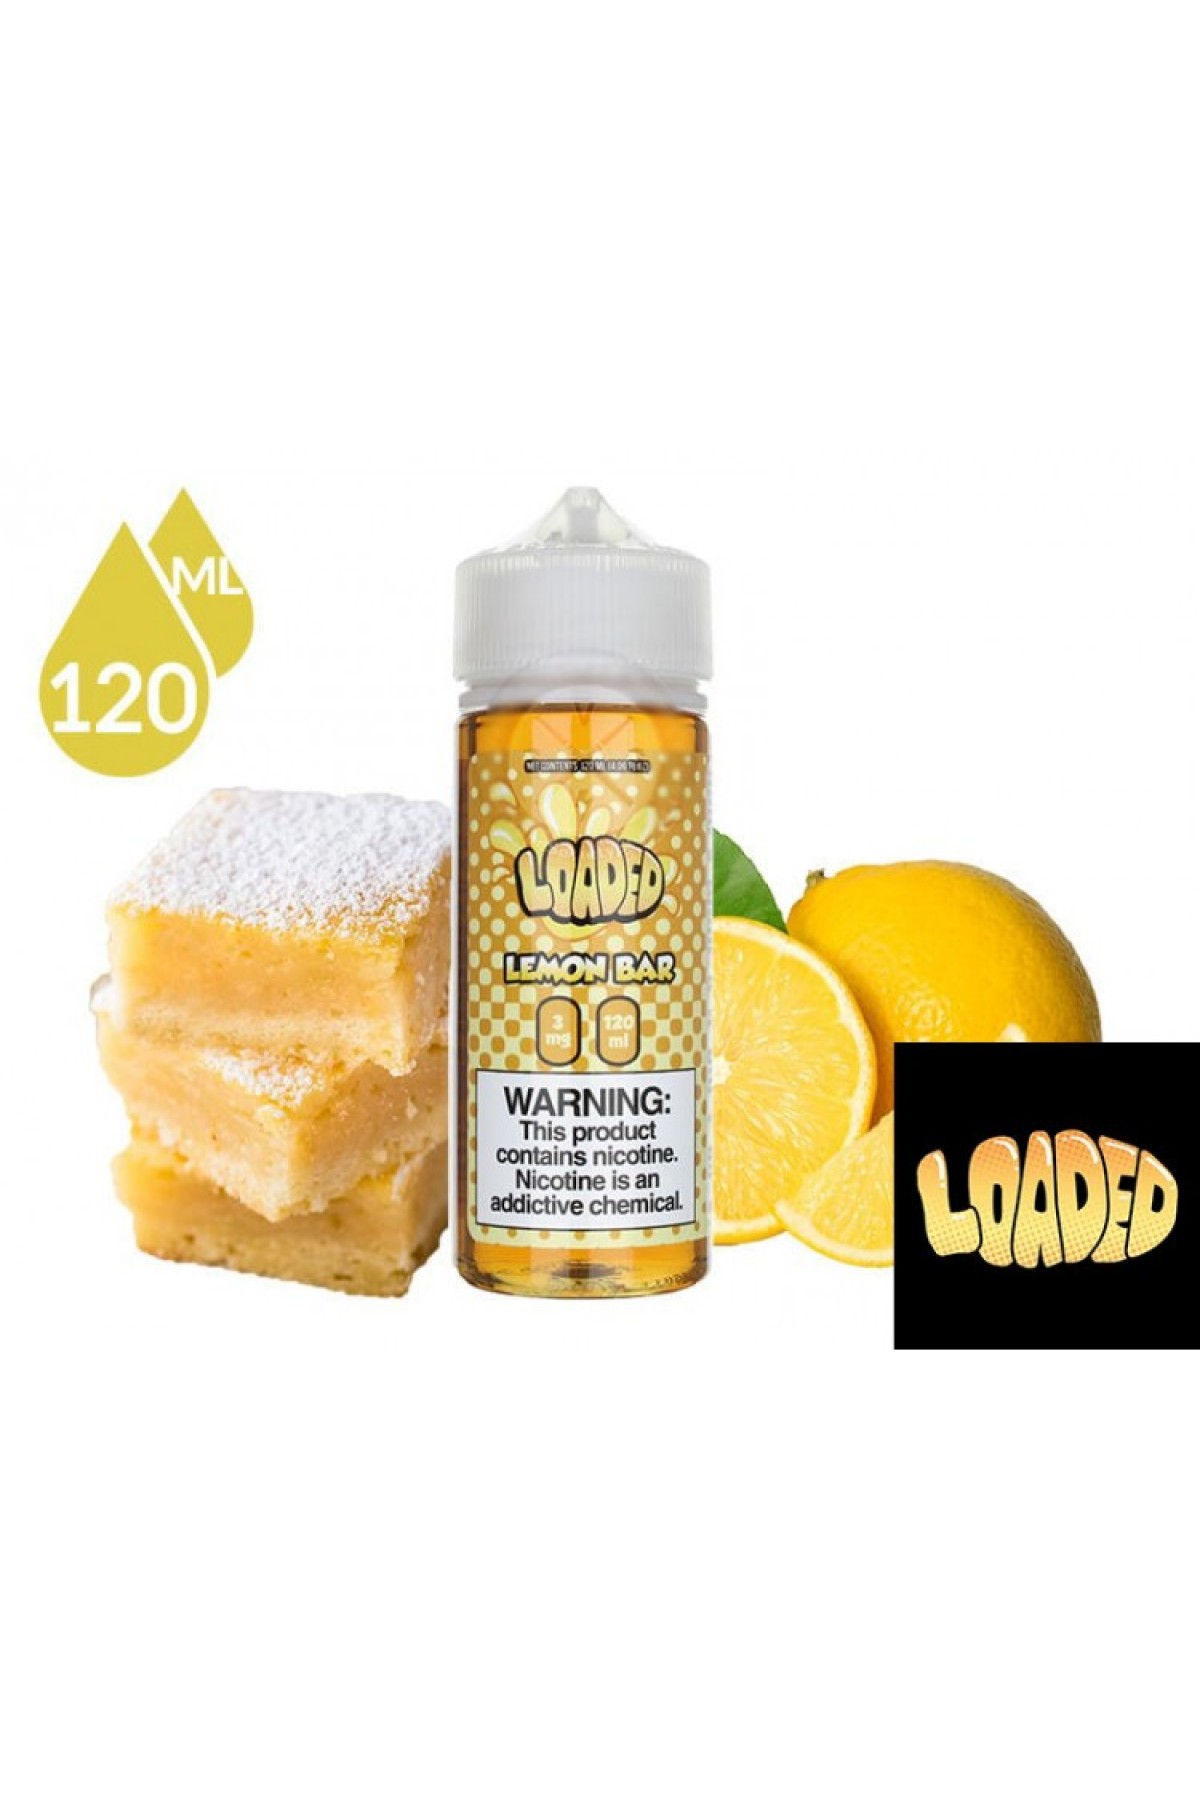 LOADED - Lemon Bar (120ML)